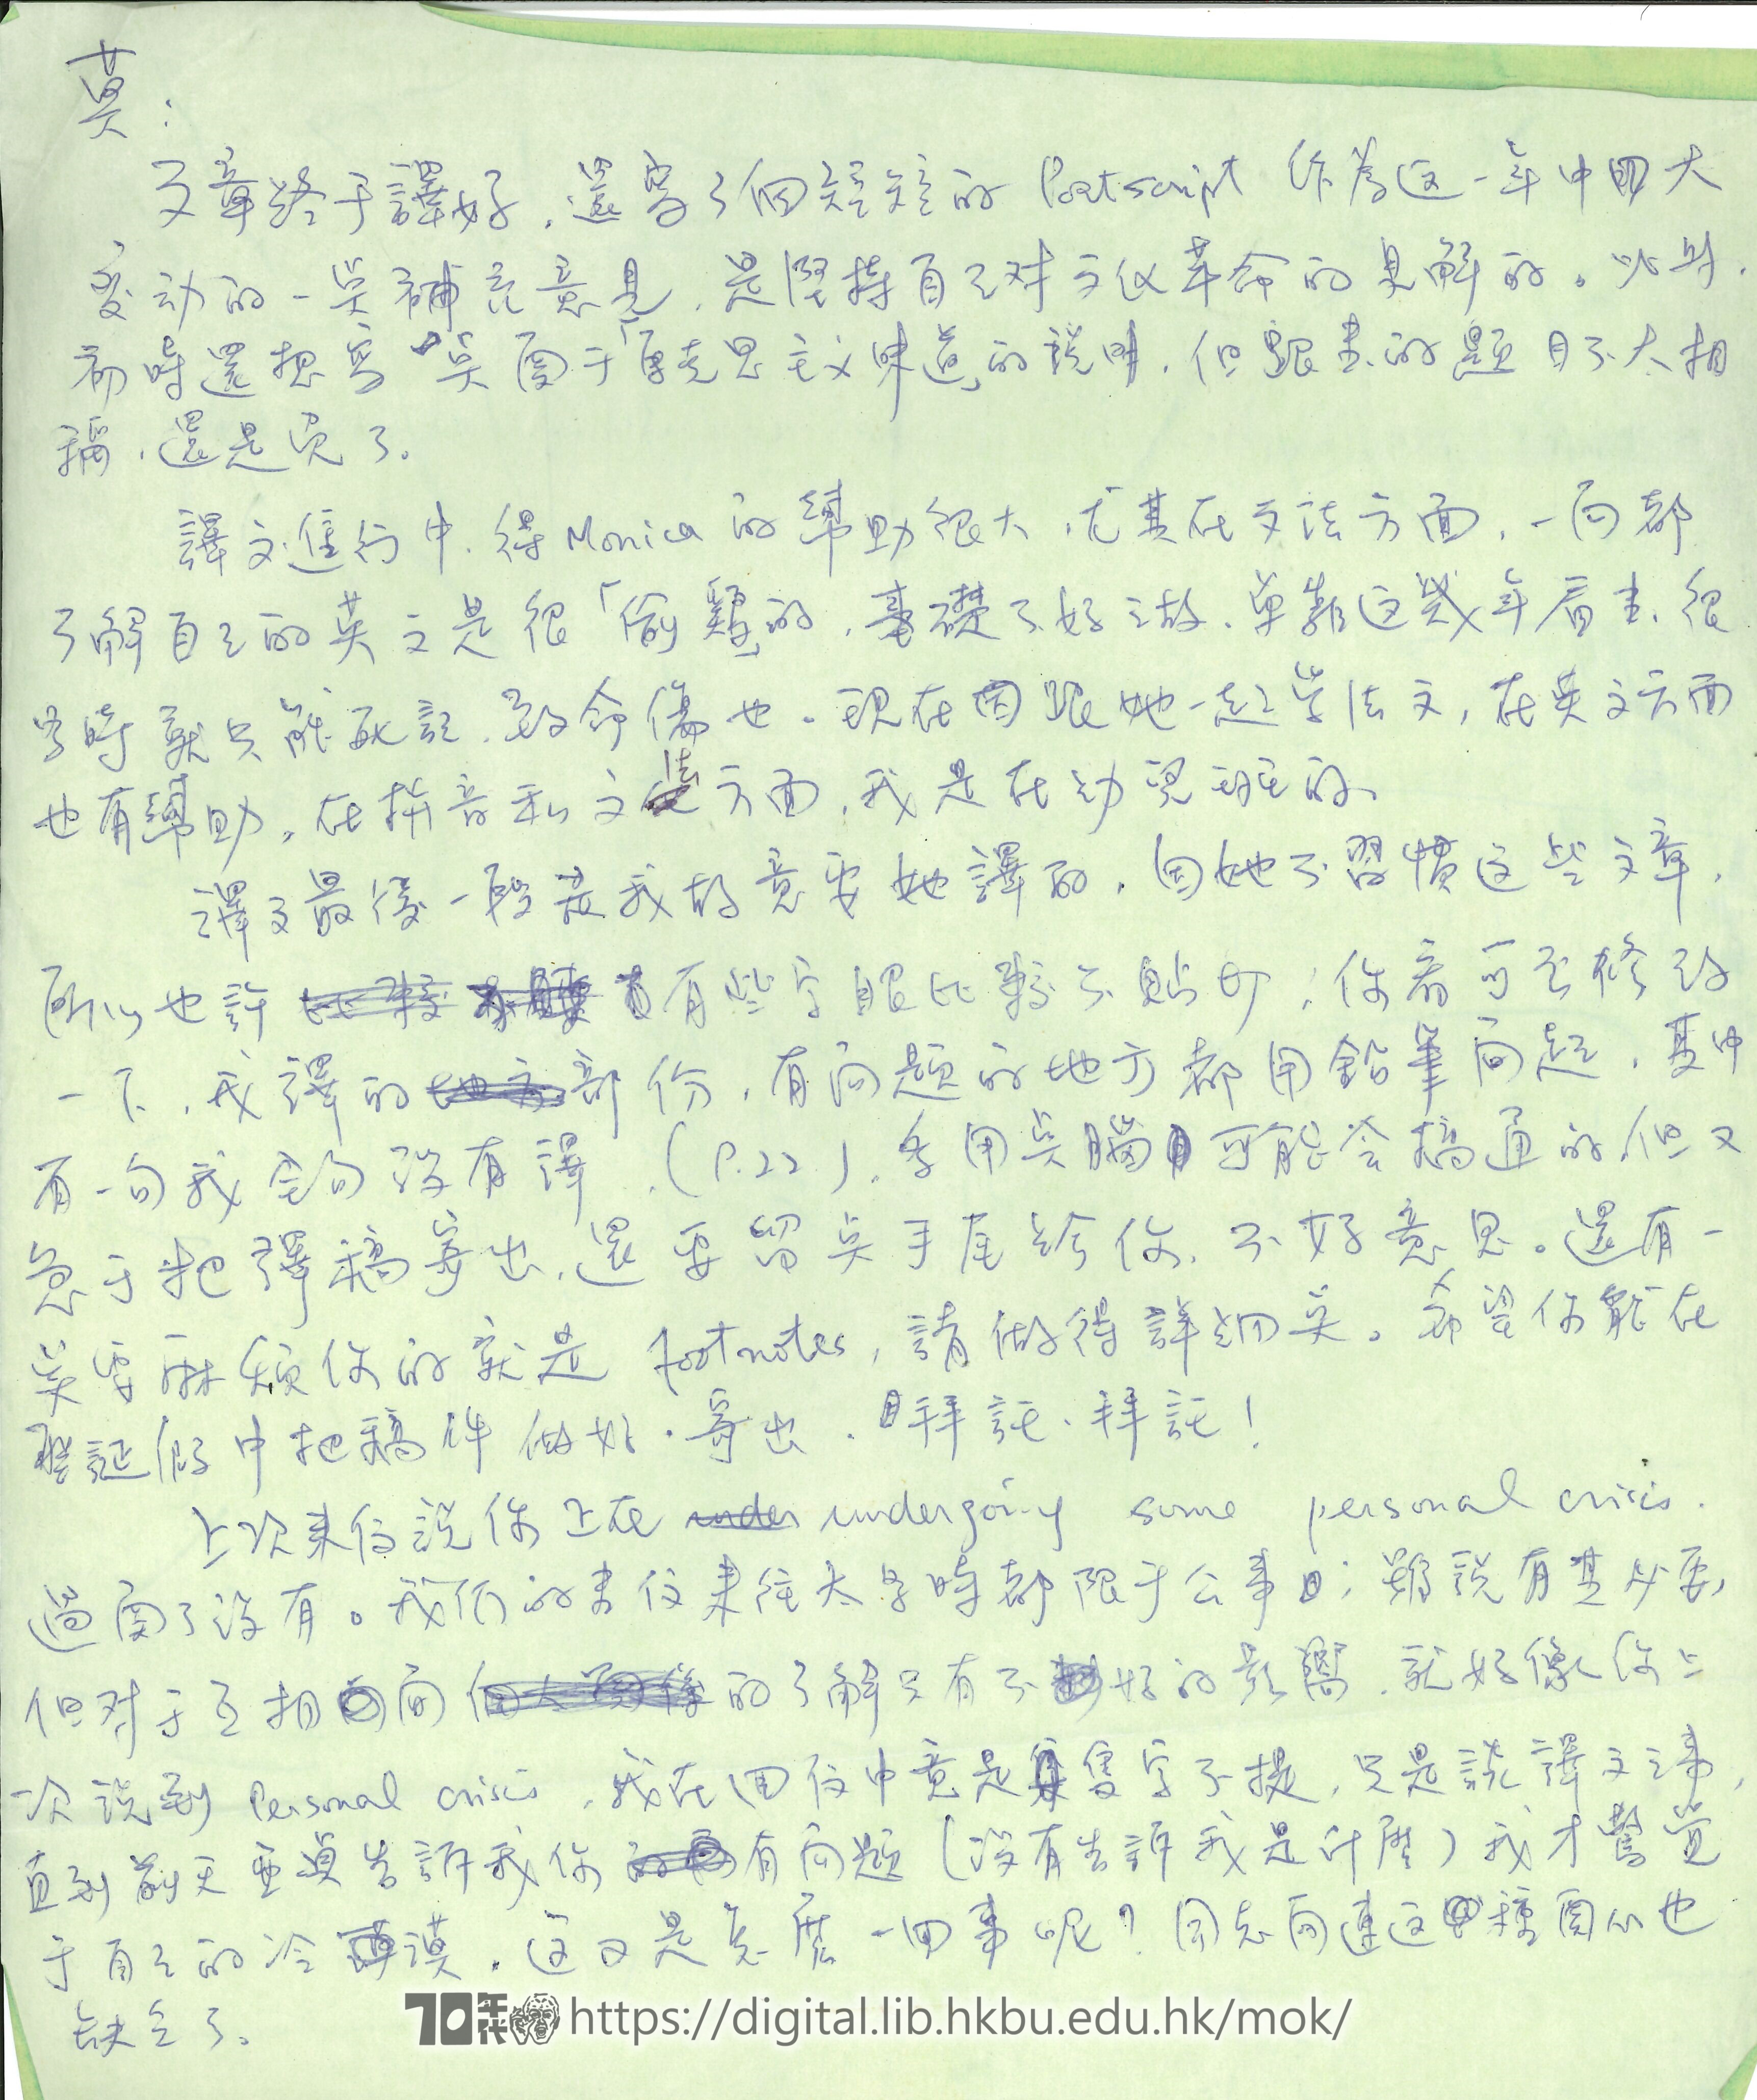   Letter from Yuen Chi-hung to Mok Chiu Yu 雄仔 